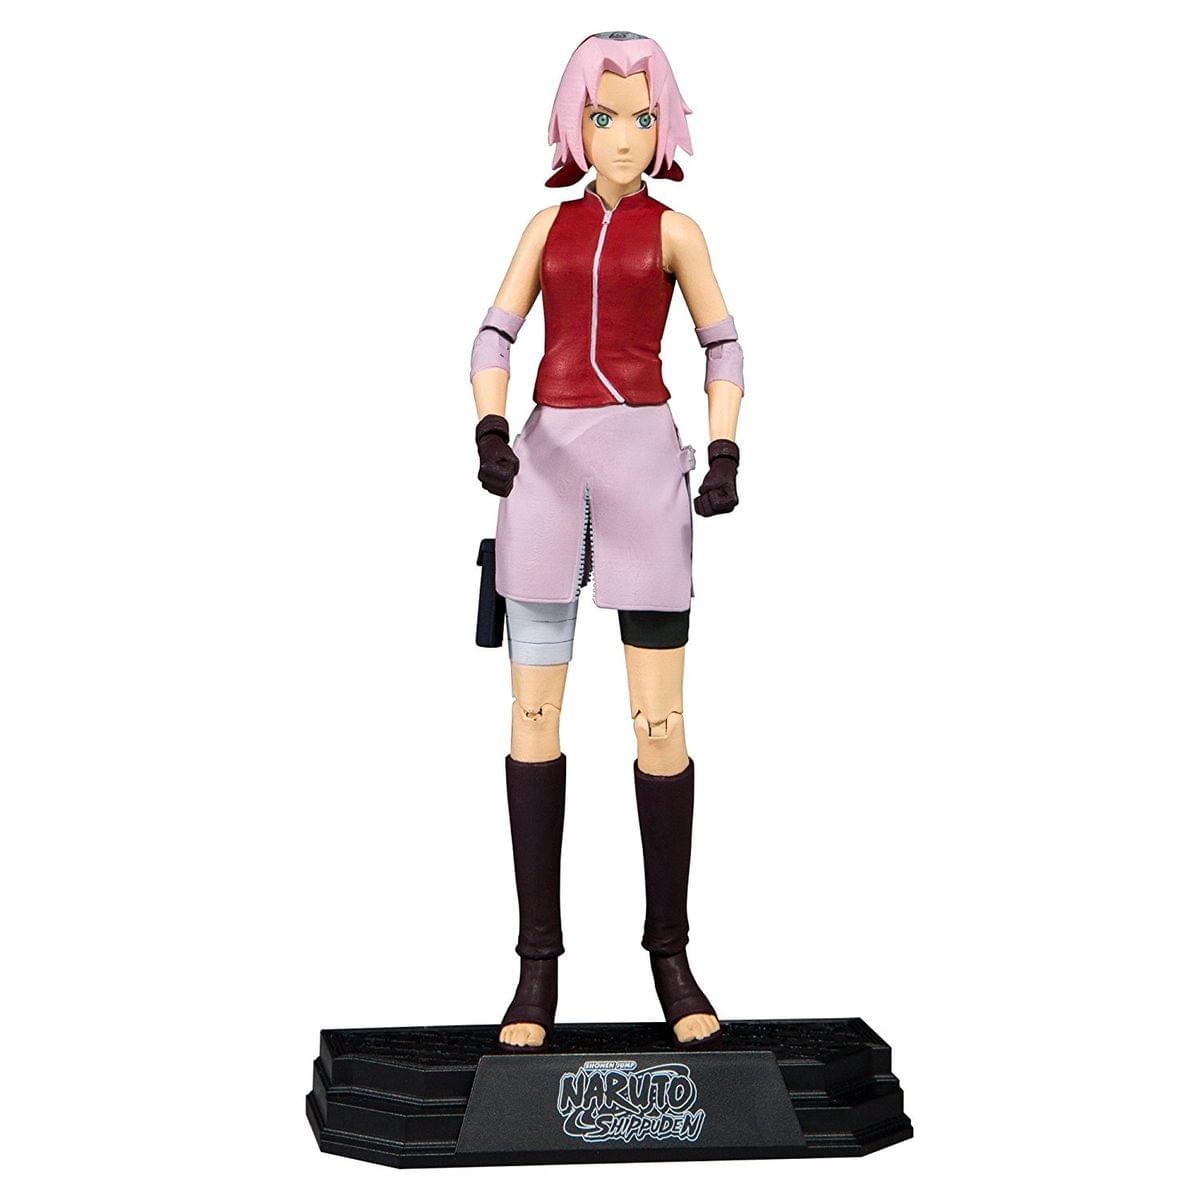 Naruto Shippuden Sakura 7" Collectible Action Figure